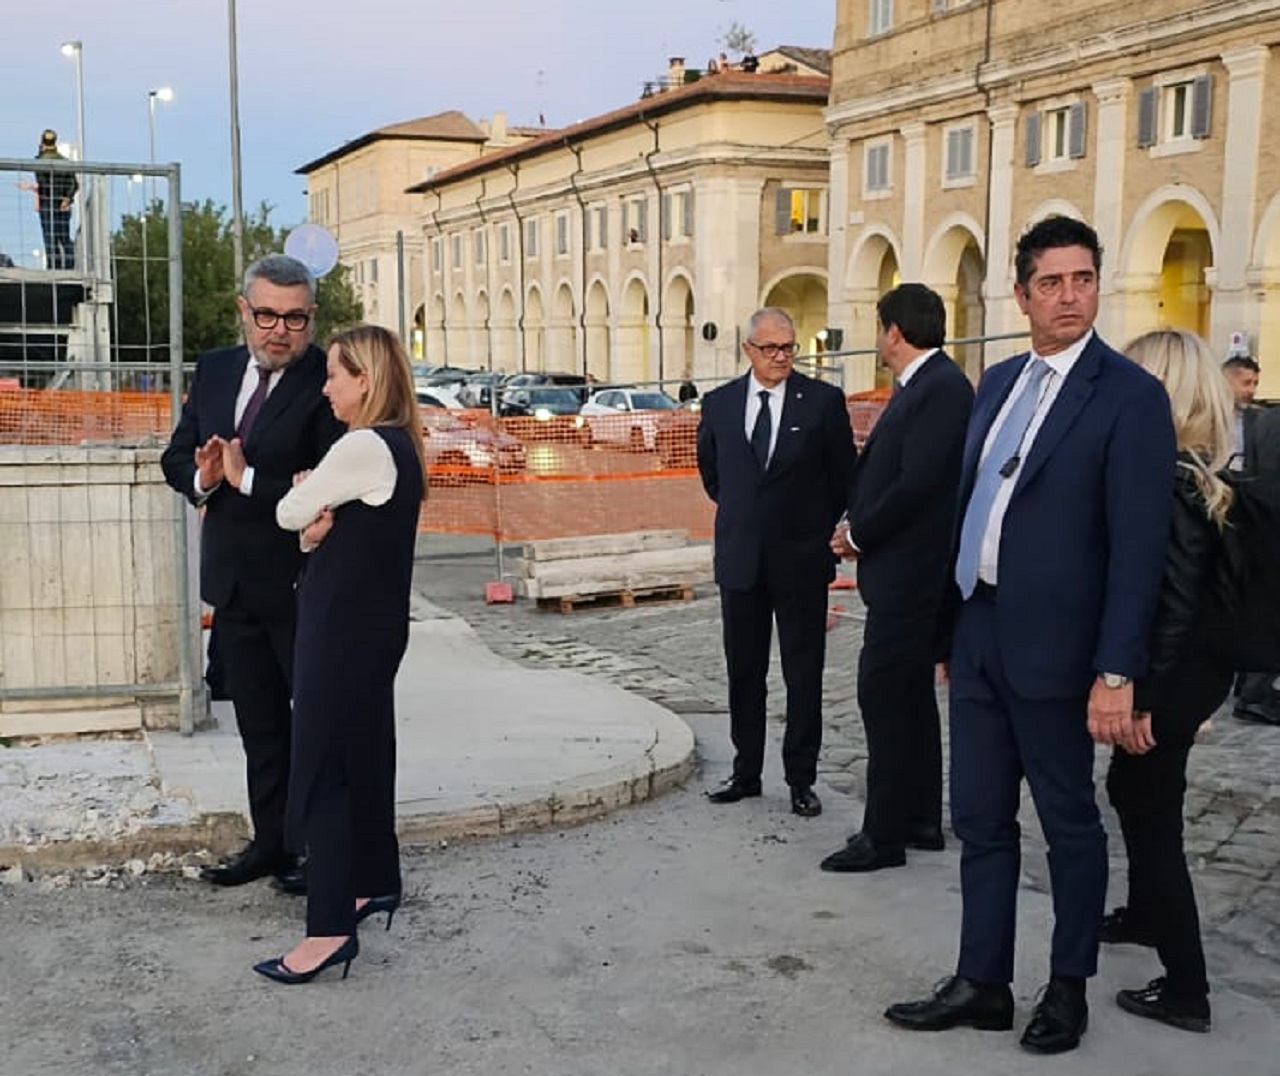 Sopralluogo su ponte Garibaldi a Senigallia, dopo l’alluvione 2022, da parte della presidente del Consiglio dei ministri Giorgia Meloni, assieme al sindaco Olivetti e al ministro Fitto